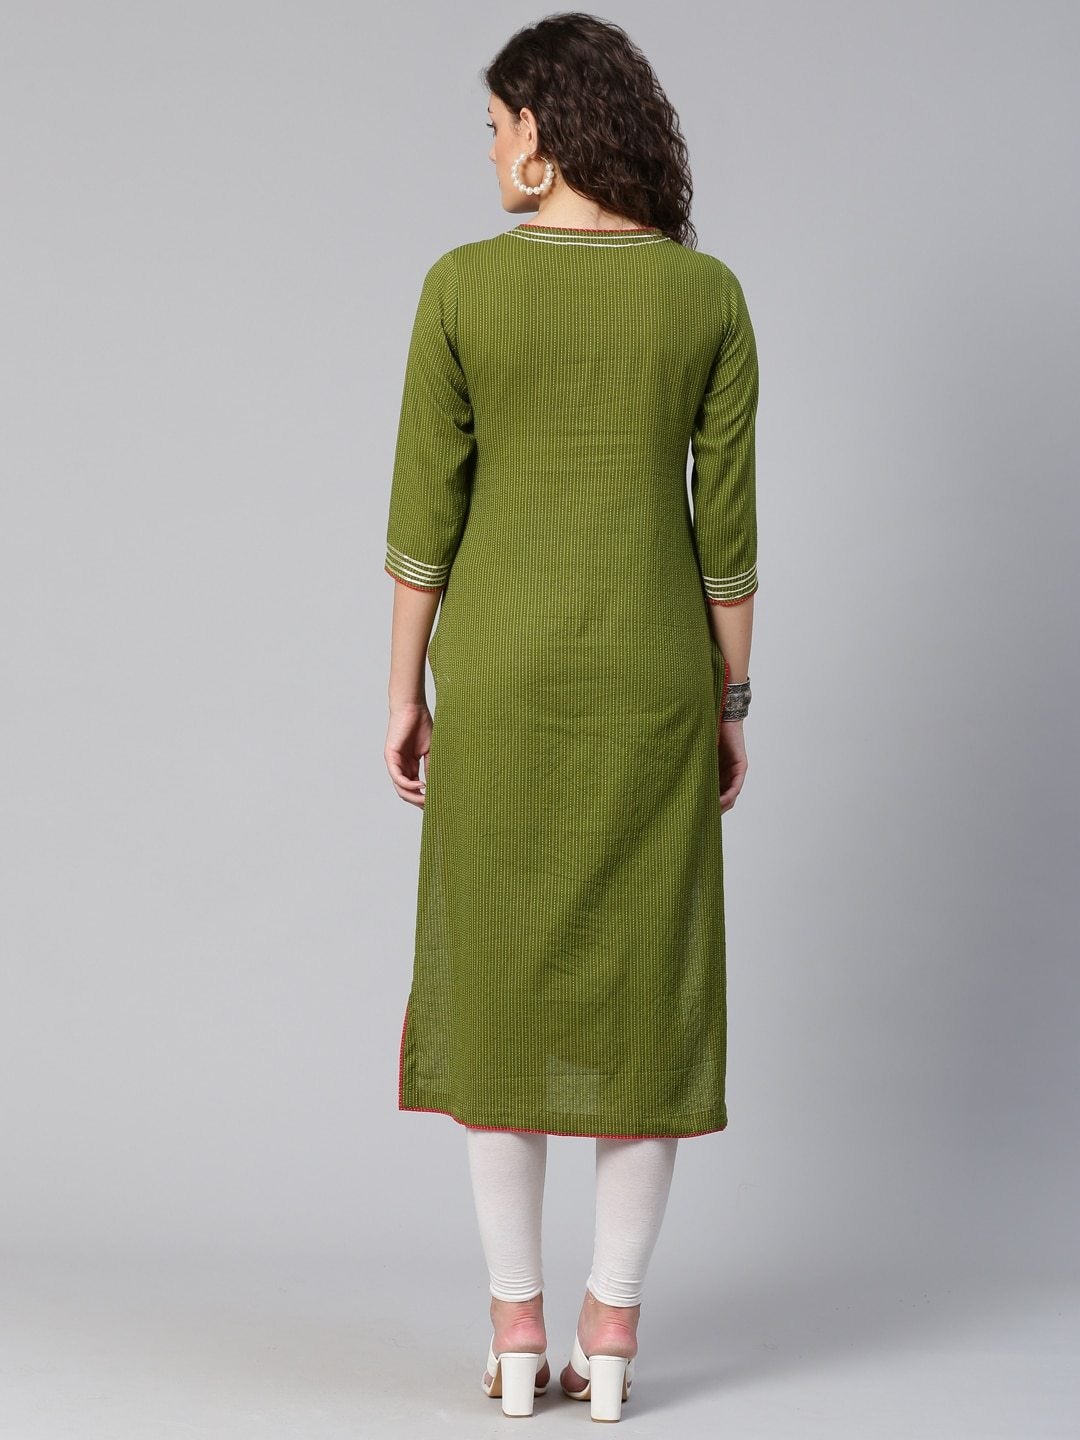 Women's Olive Green Striped Straight Kurta - Meeranshi